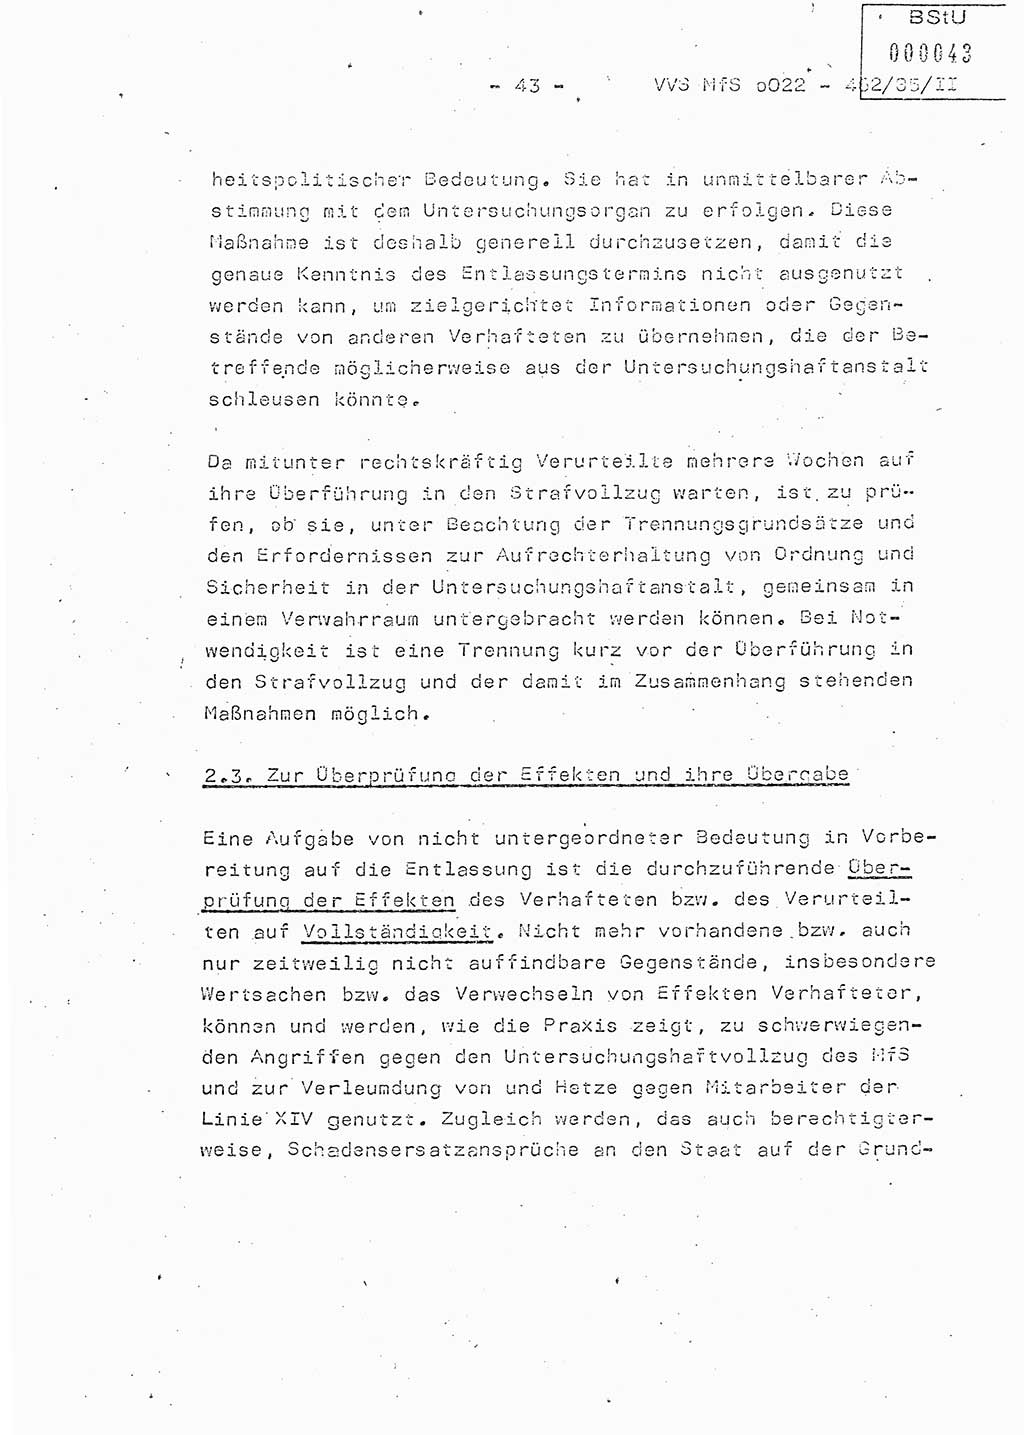 Der Untersuchungshaftvollzug im MfS, Schulungsmaterial Teil Ⅱ, Ministerium für Staatssicherheit [Deutsche Demokratische Republik (DDR)], Abteilung (Abt.) ⅩⅣ, Vertrauliche Verschlußsache (VVS) o022-462/85/Ⅱ, Berlin 1985, Seite 43 (Sch.-Mat. Ⅱ MfS DDR Abt. ⅩⅣ VVS o022-462/85/Ⅱ 1985, S. 43)